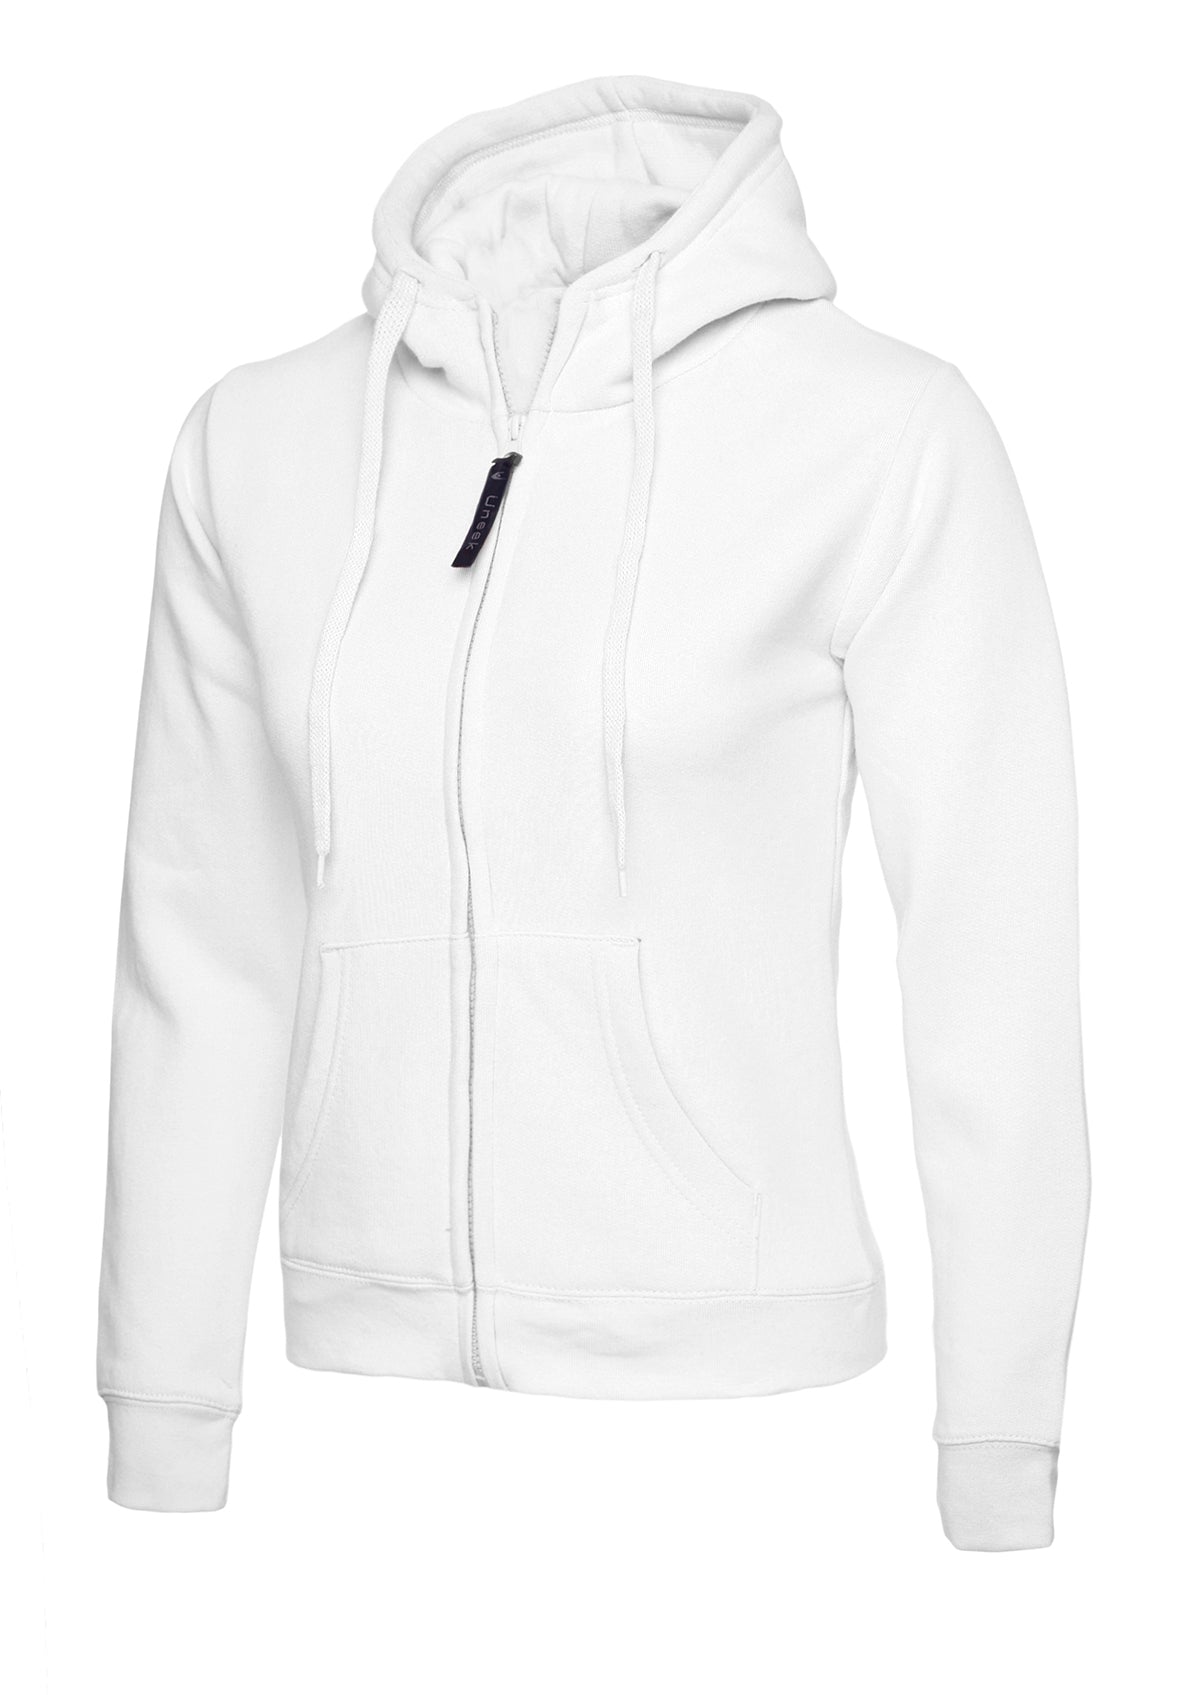 Uneek Ladies Classic Full Zip Hooded Sweatshirt UC505 - White